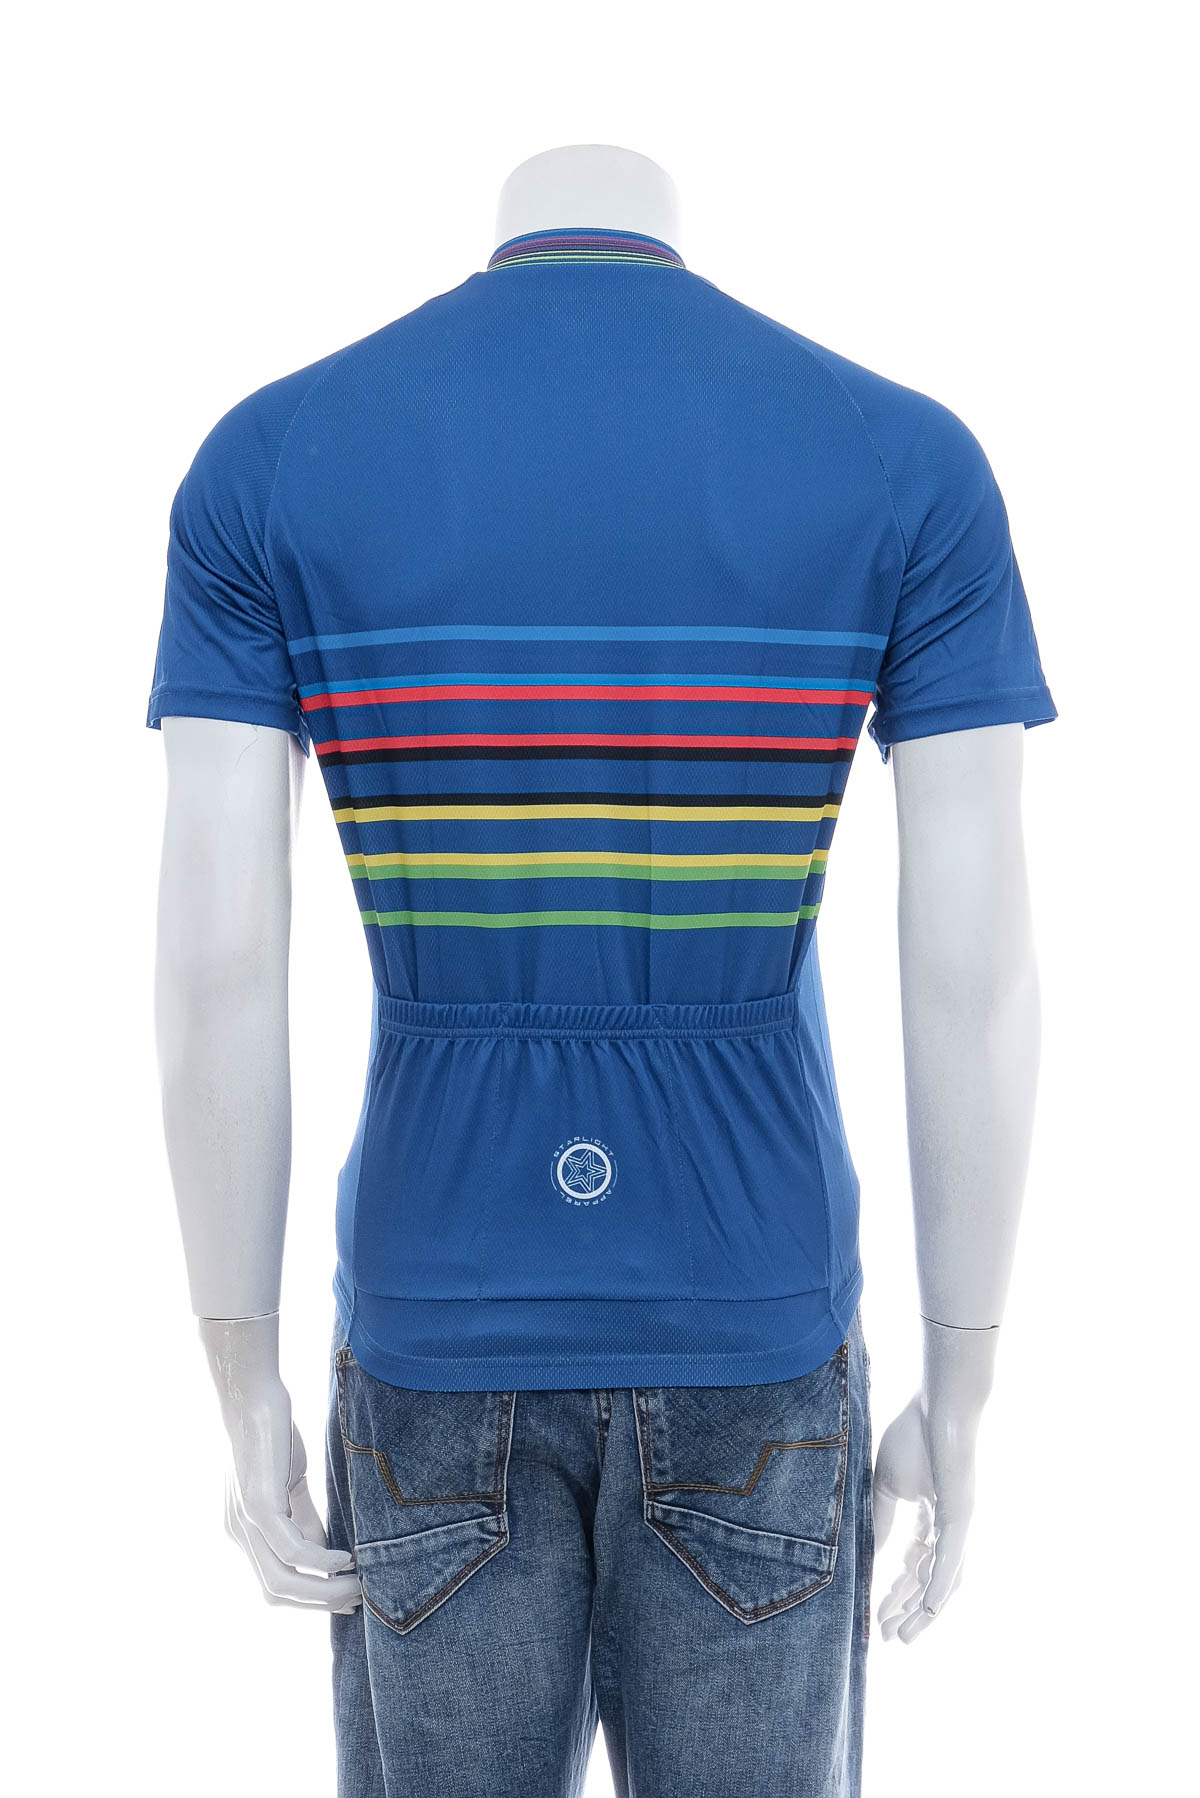 Αντρική μπλούζα Για ποδηλασία - STARLIGHT - 1